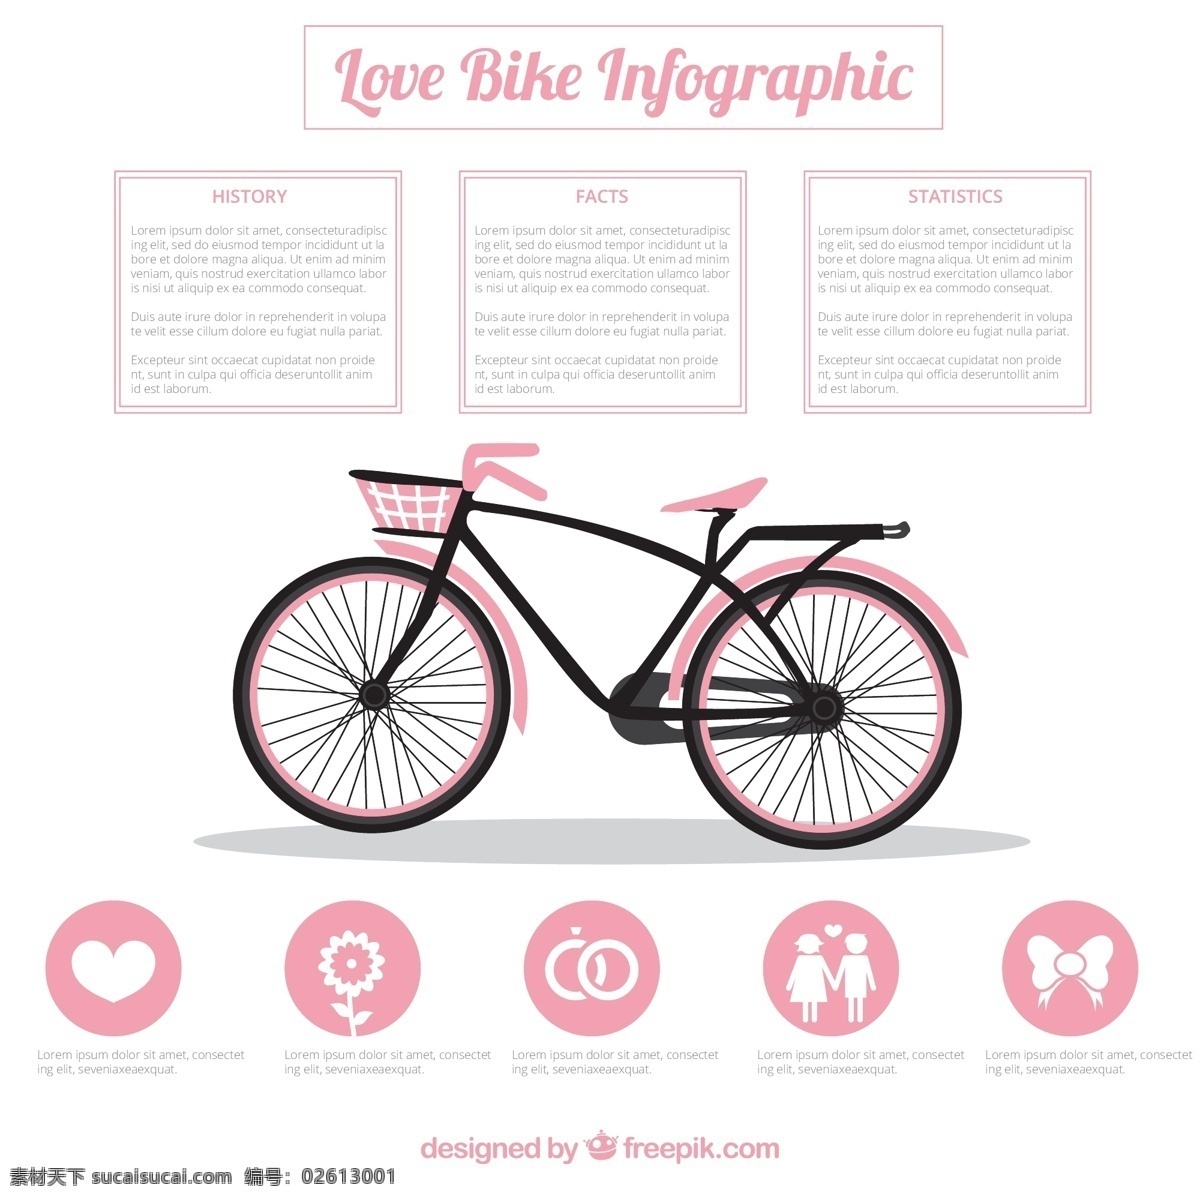 粉红色 自行车 图表 电脑 体育 健身 健康 色 粉红 运动 可爱 图形 运输 图 信息 过程 数据链